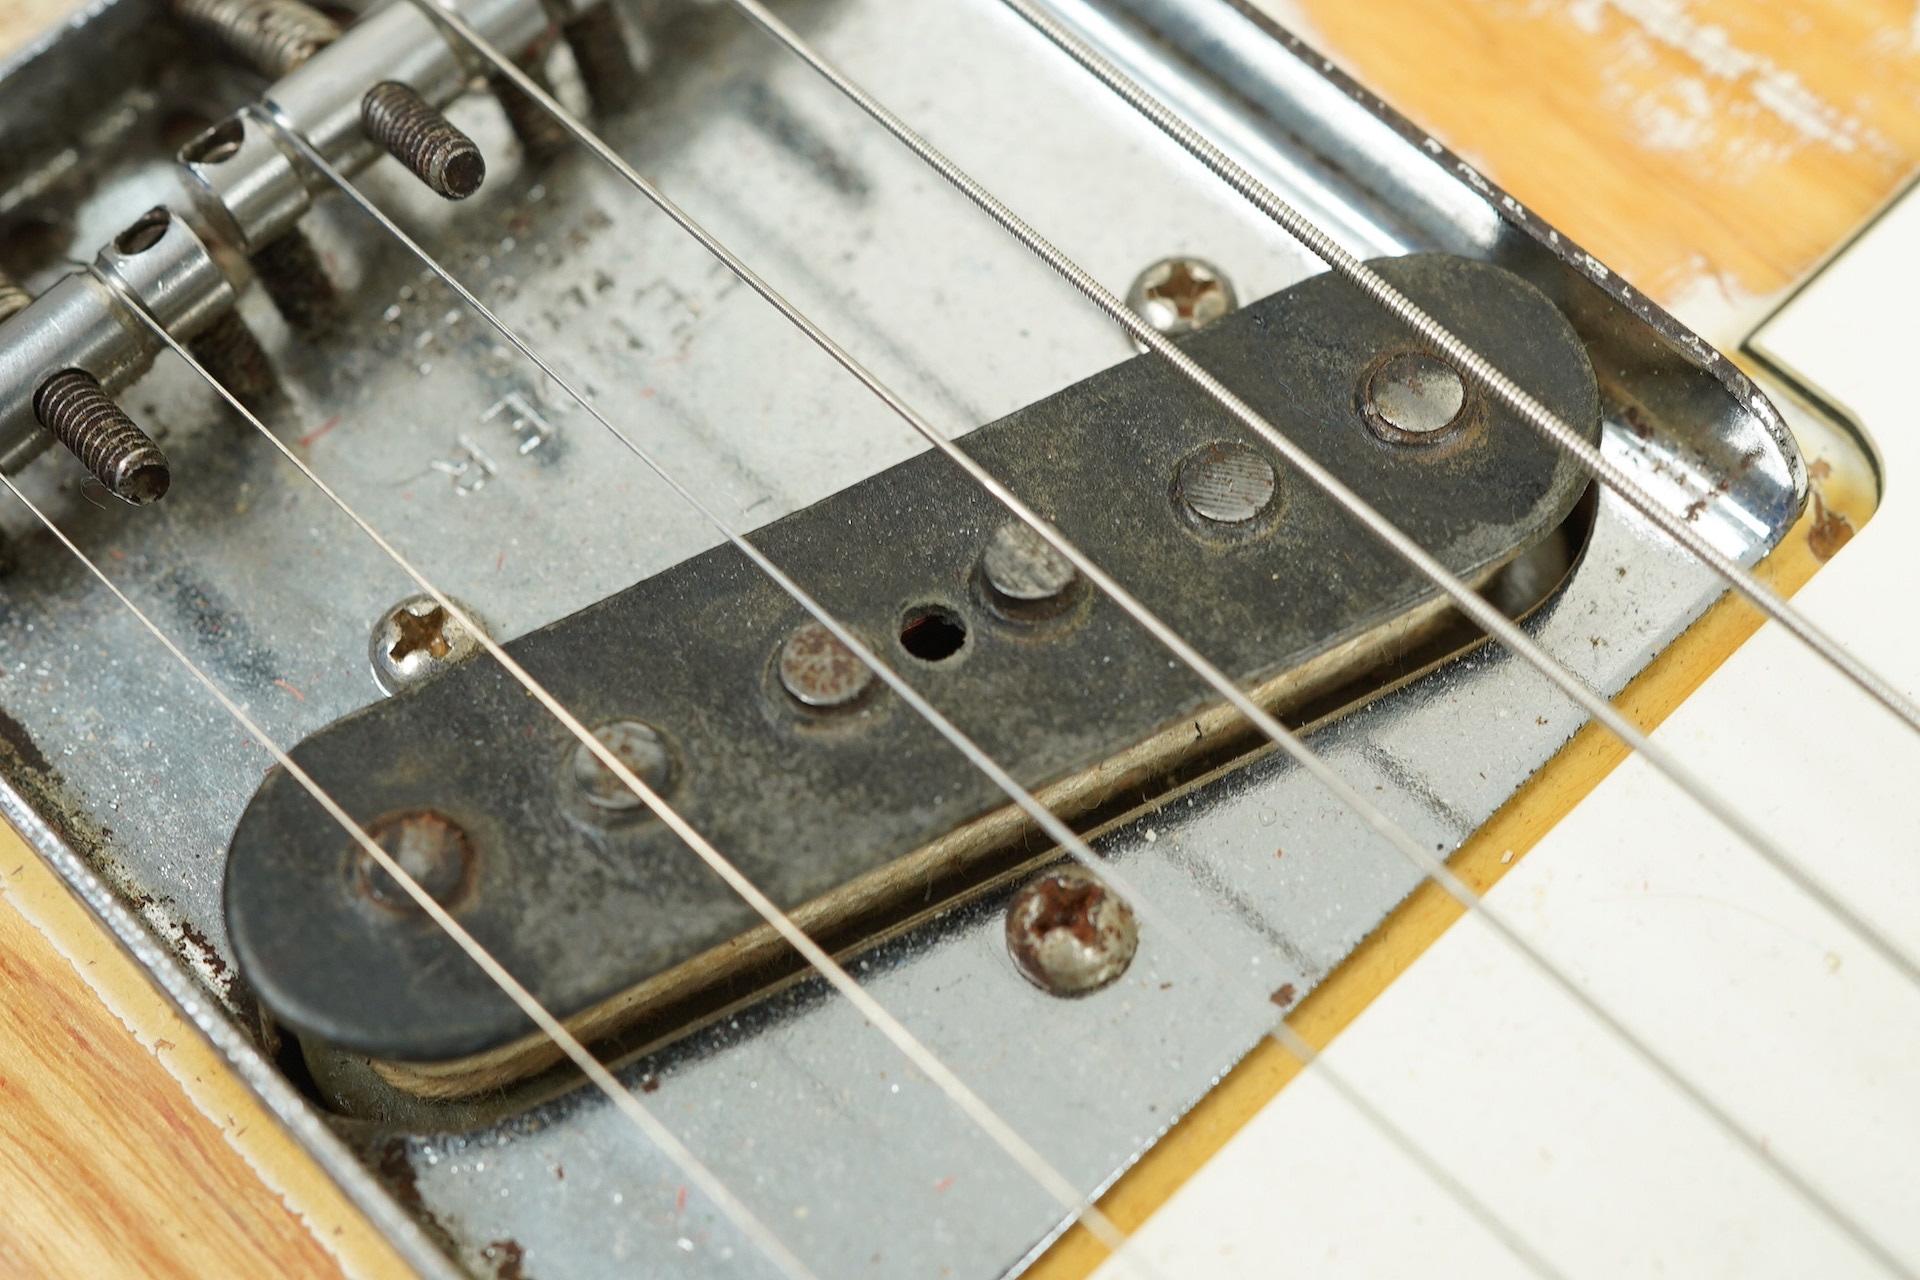 1969 Fender Telecaster Blonde refin